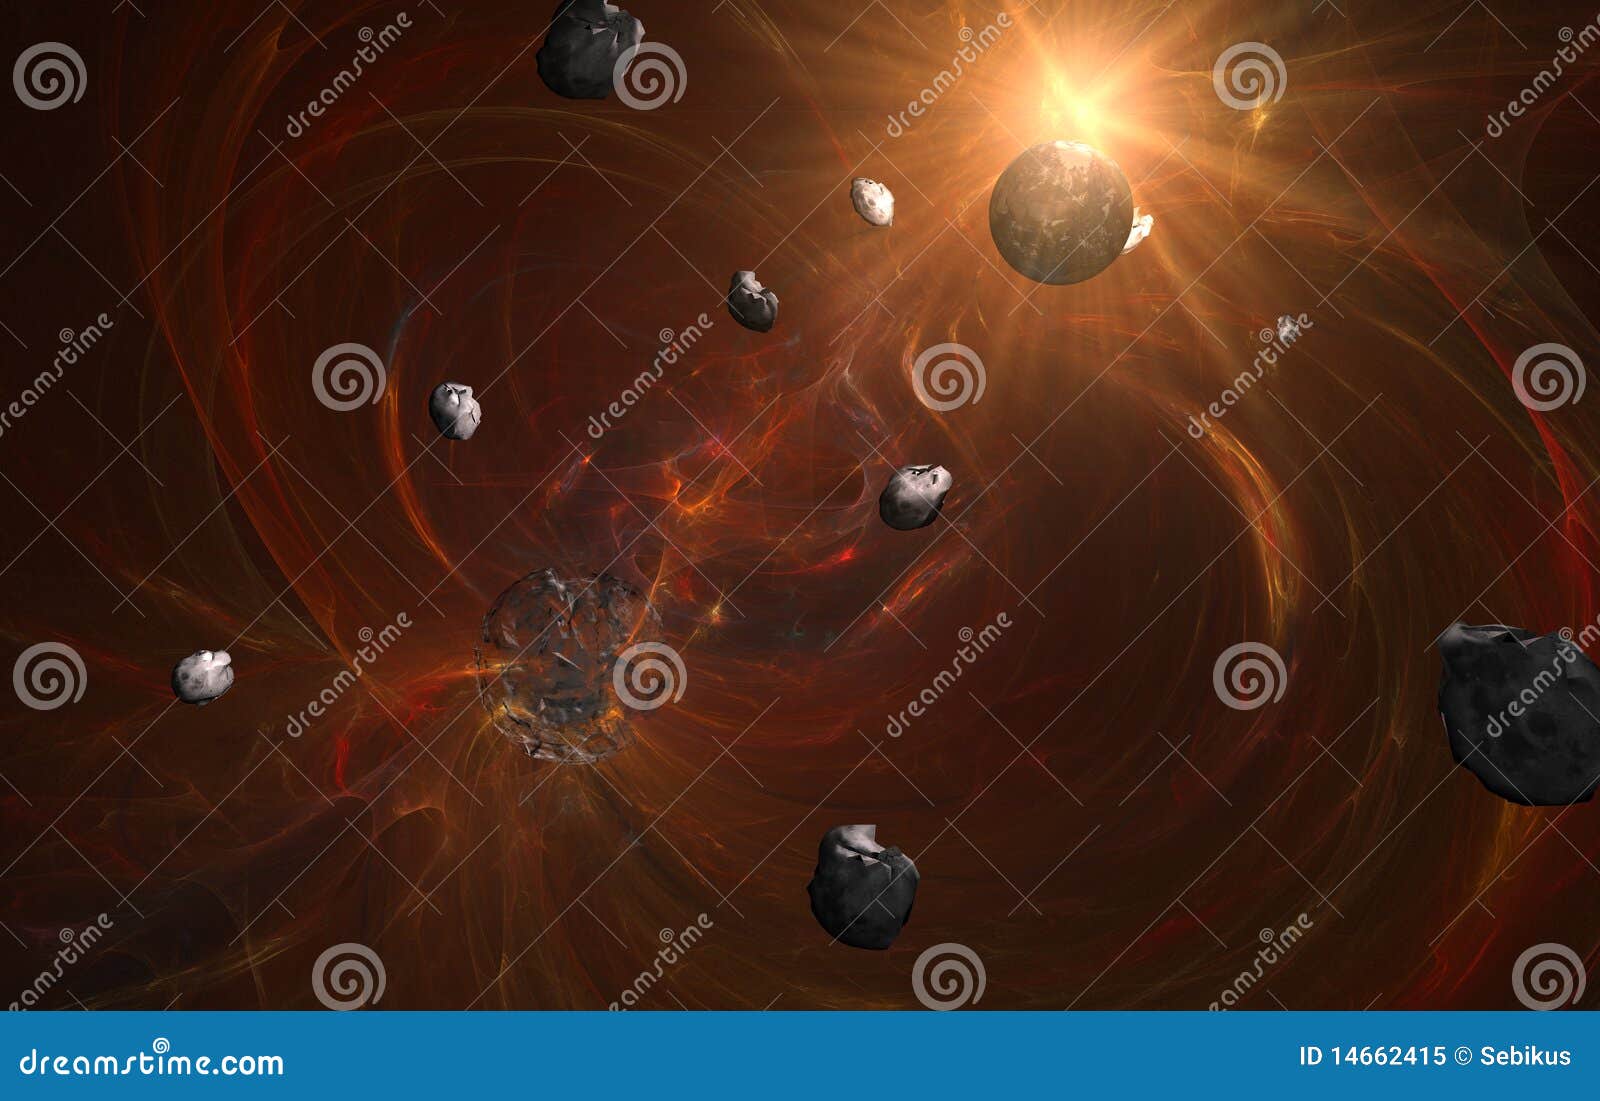 Narodziny mgławicy nowa planety czerwień. Asteroid planety czerwieni słońce